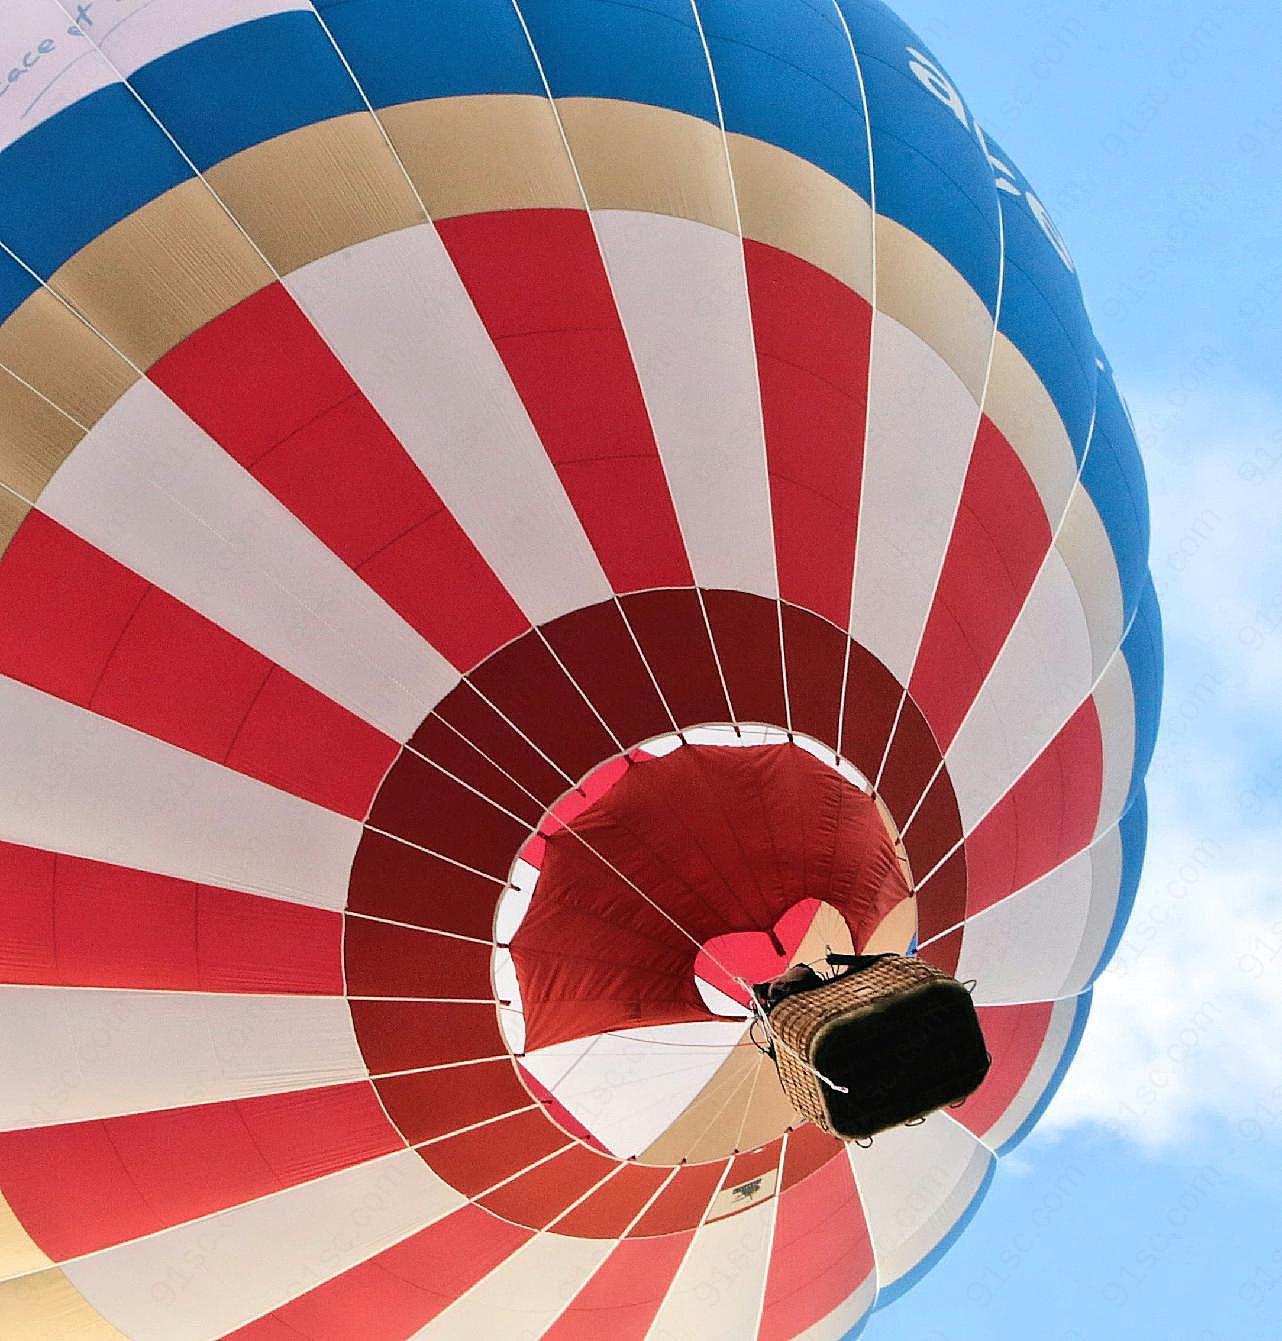 空中彩色热气球图片摄影